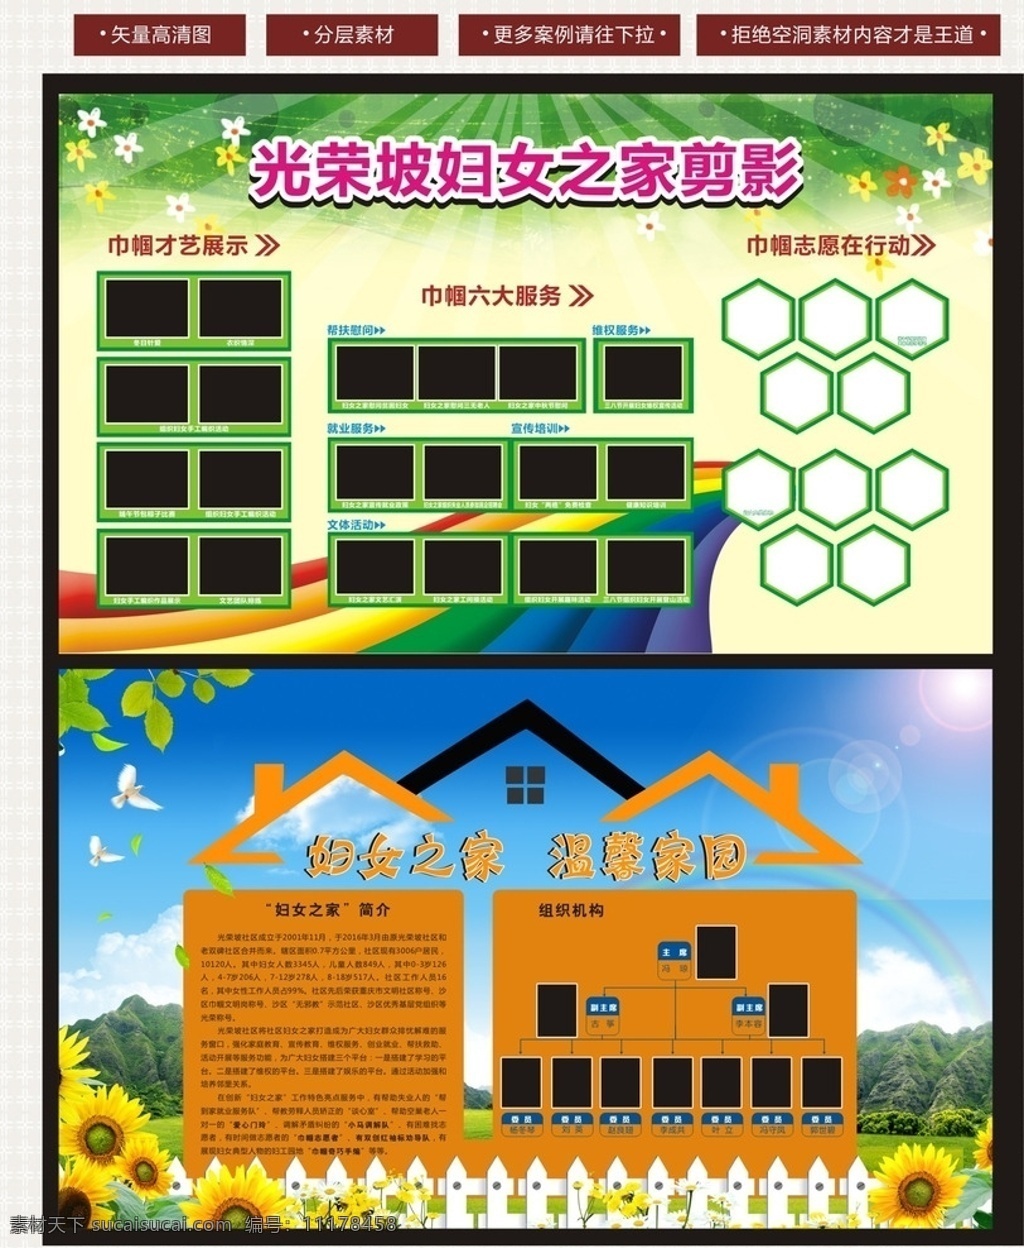 妇女 之家 宣传 展板 妇女之家 照片展板 房子造型 宣传展板 向日葵 绿色背景 照片排版 蓝天白云